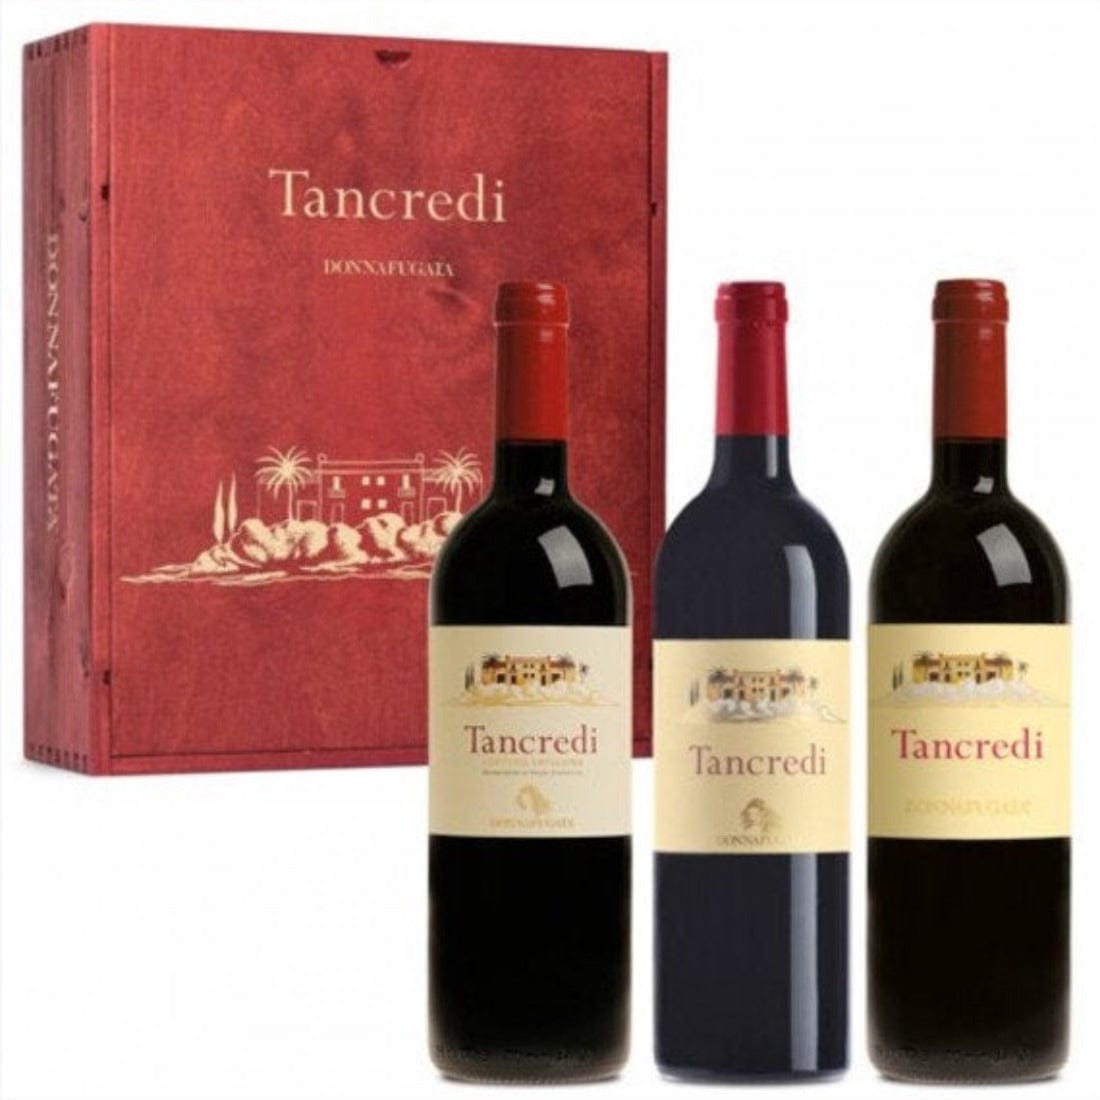 Tancredi 2013-2014-2016 Igt Terre Siciliane 3 bottiglie - Donnafugata-Vinolog24.com